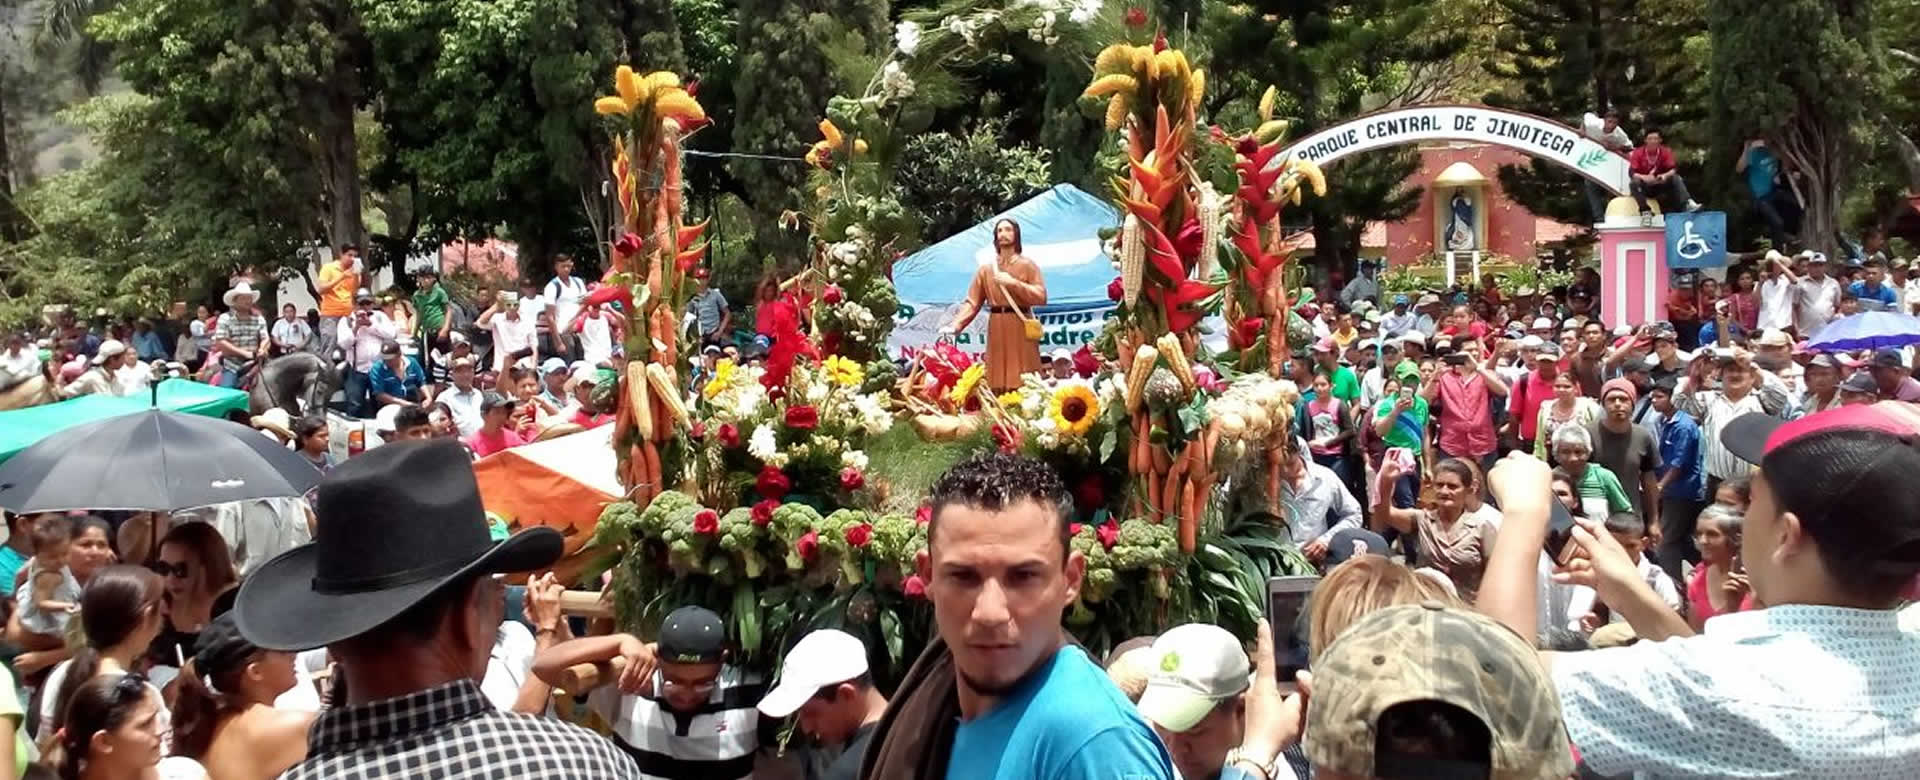 Feligresía católica de Jinotega celebran a San Isidro Labrador